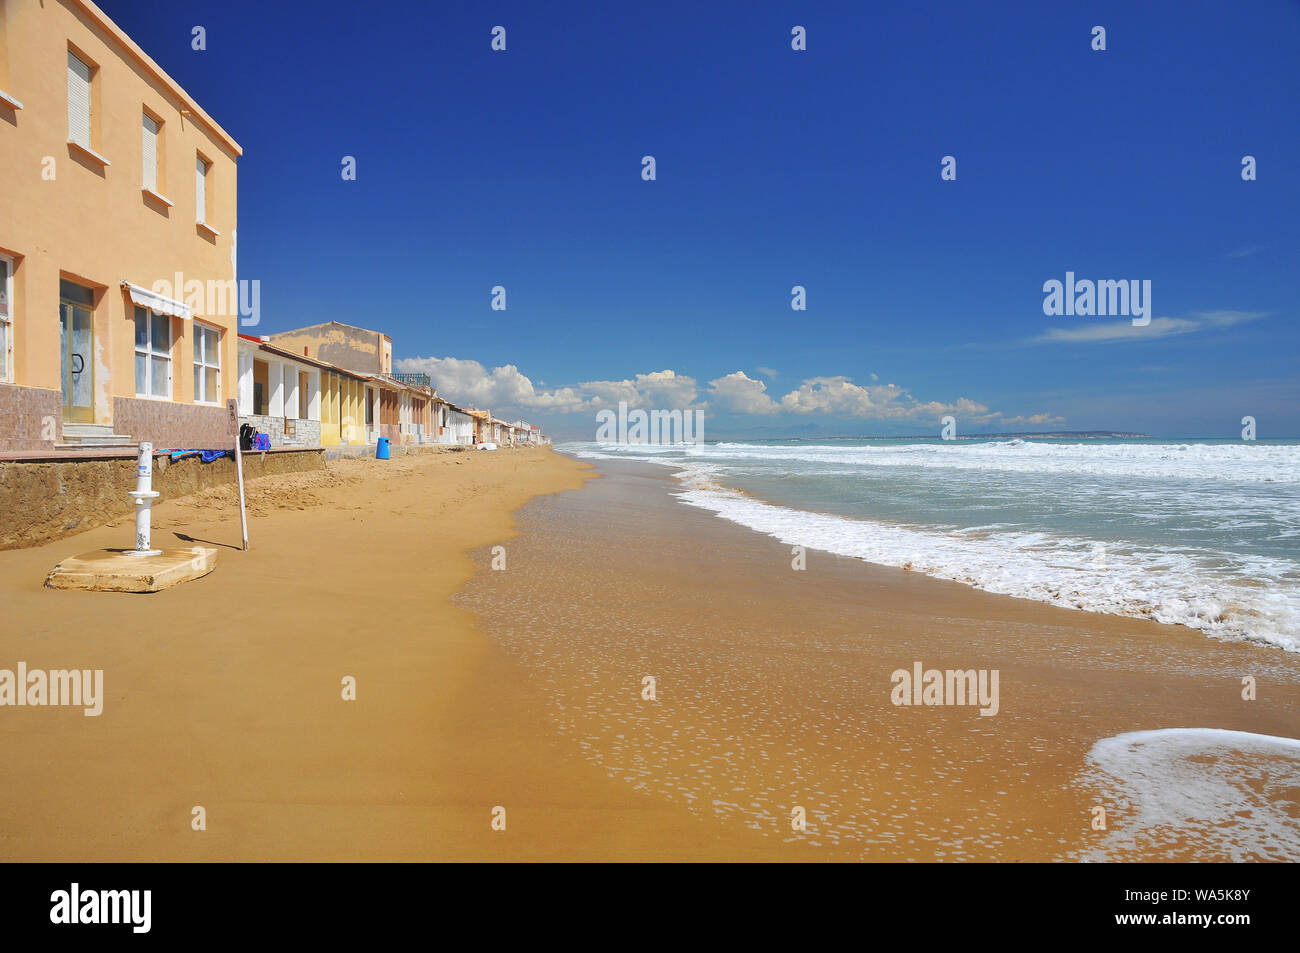 Beach of Guardamar del Segura, Region Alicante, Spain Stock Photo